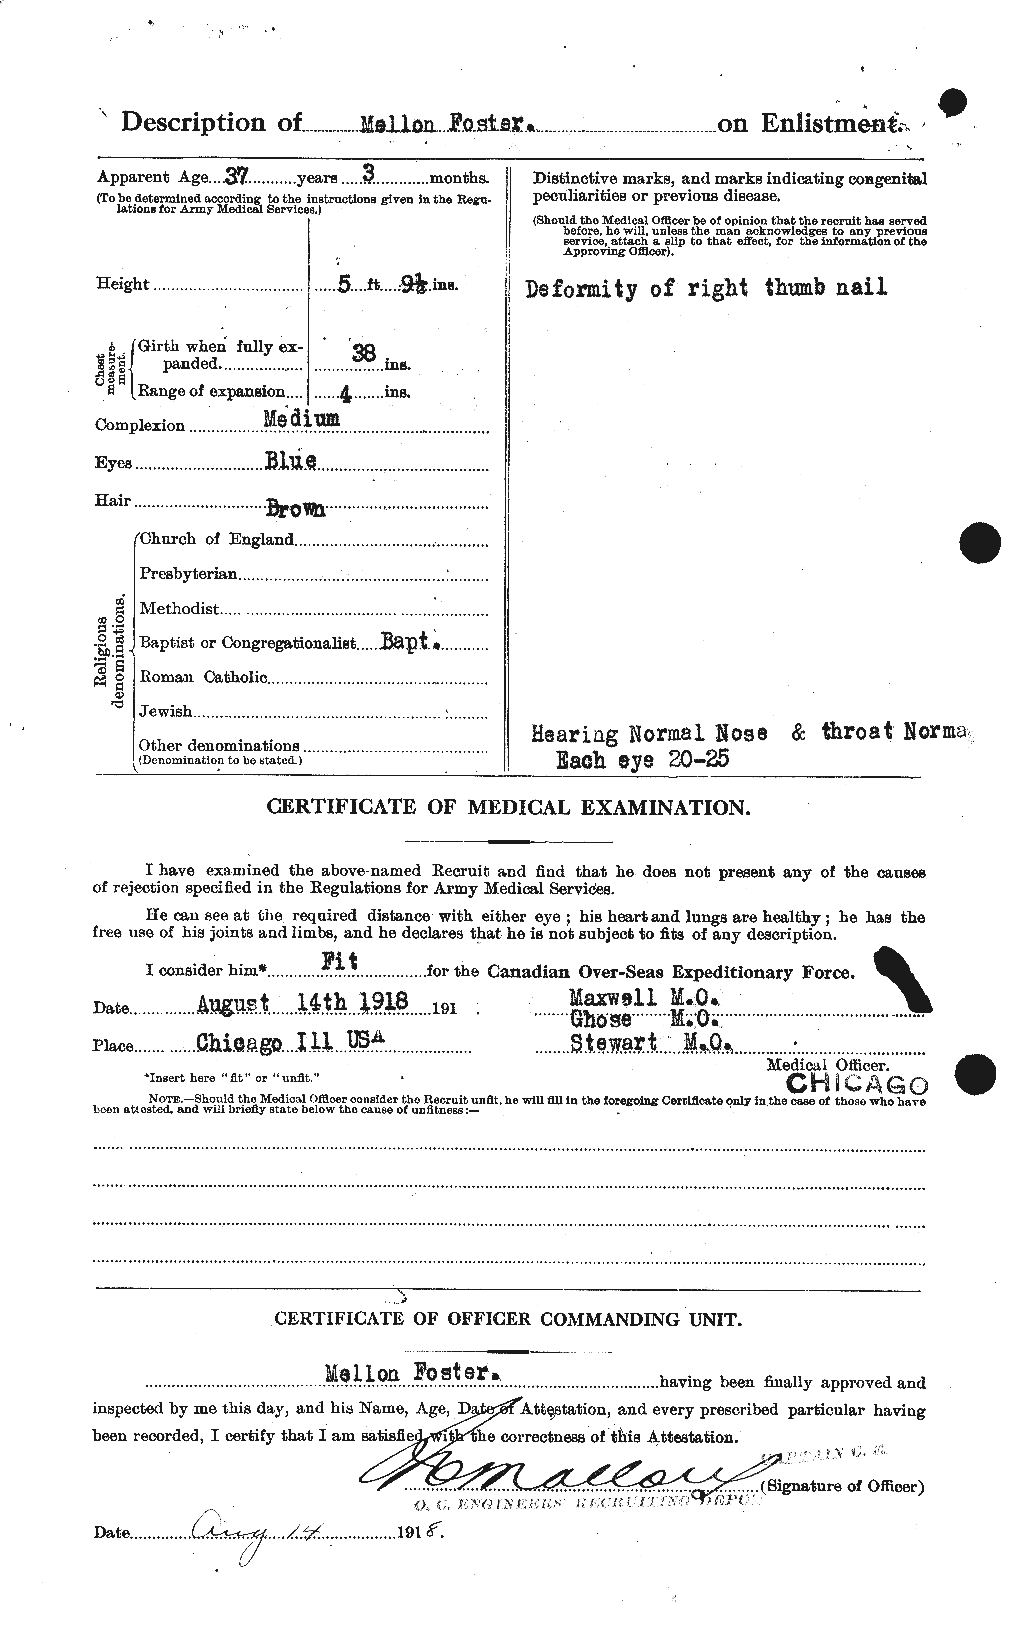 Dossiers du Personnel de la Première Guerre mondiale - CEC 333425b